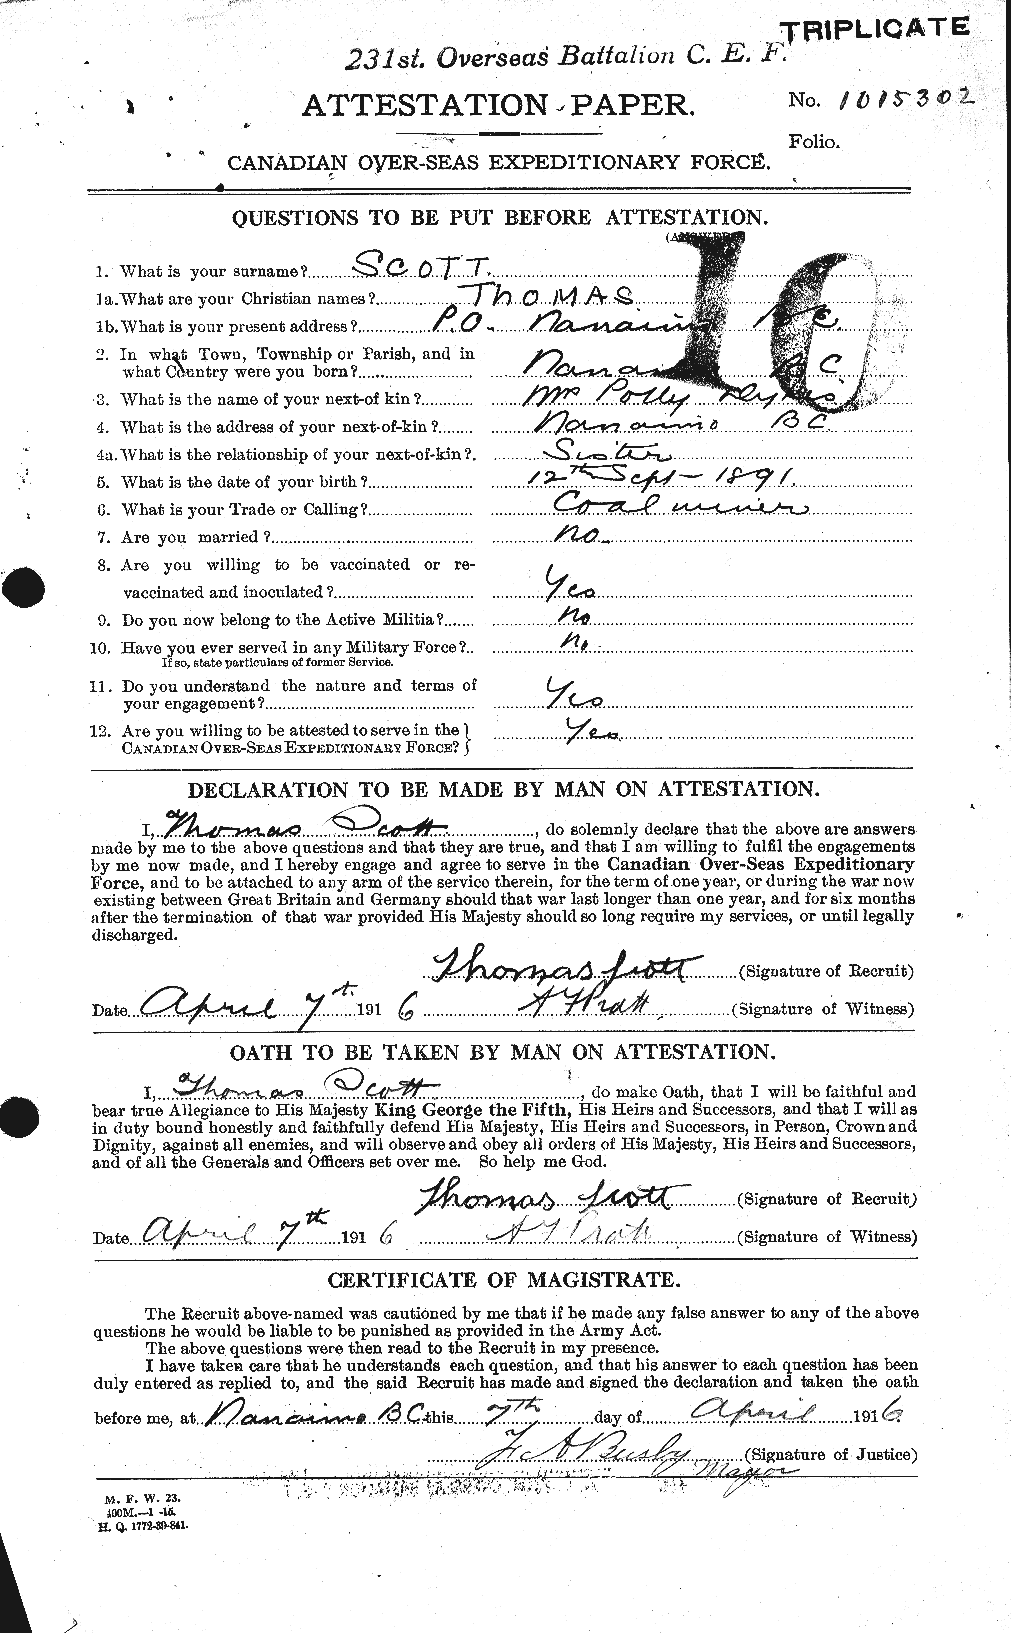 Dossiers du Personnel de la Première Guerre mondiale - CEC 088533a